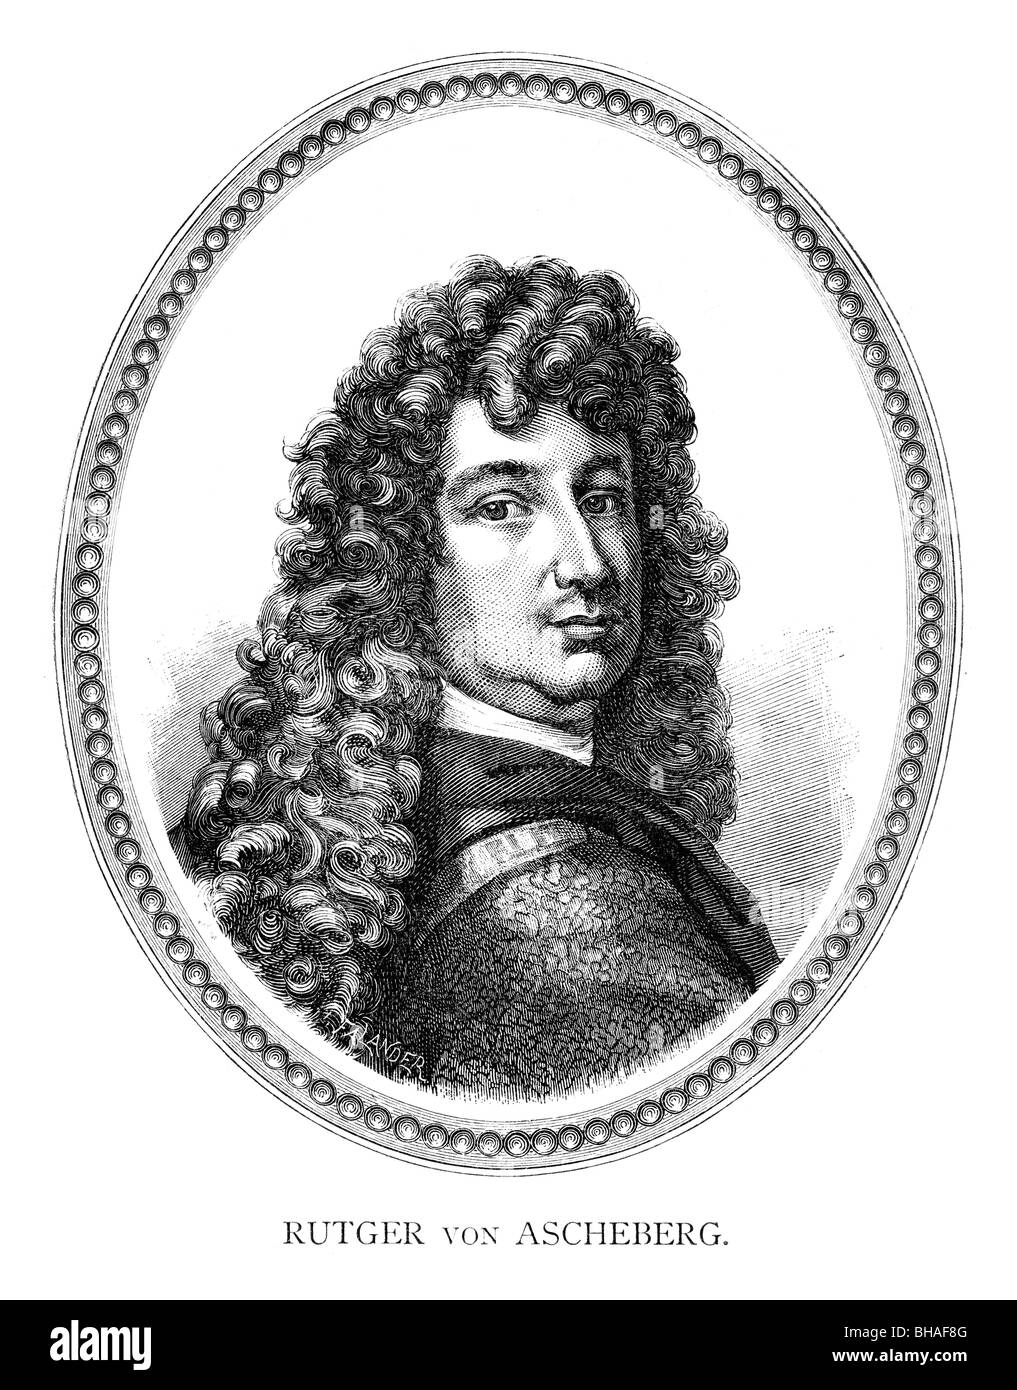 Count Rutger von Ascheberg (1621-1693) était un soldat, officier et fonctionnaire au service suédois Banque D'Images